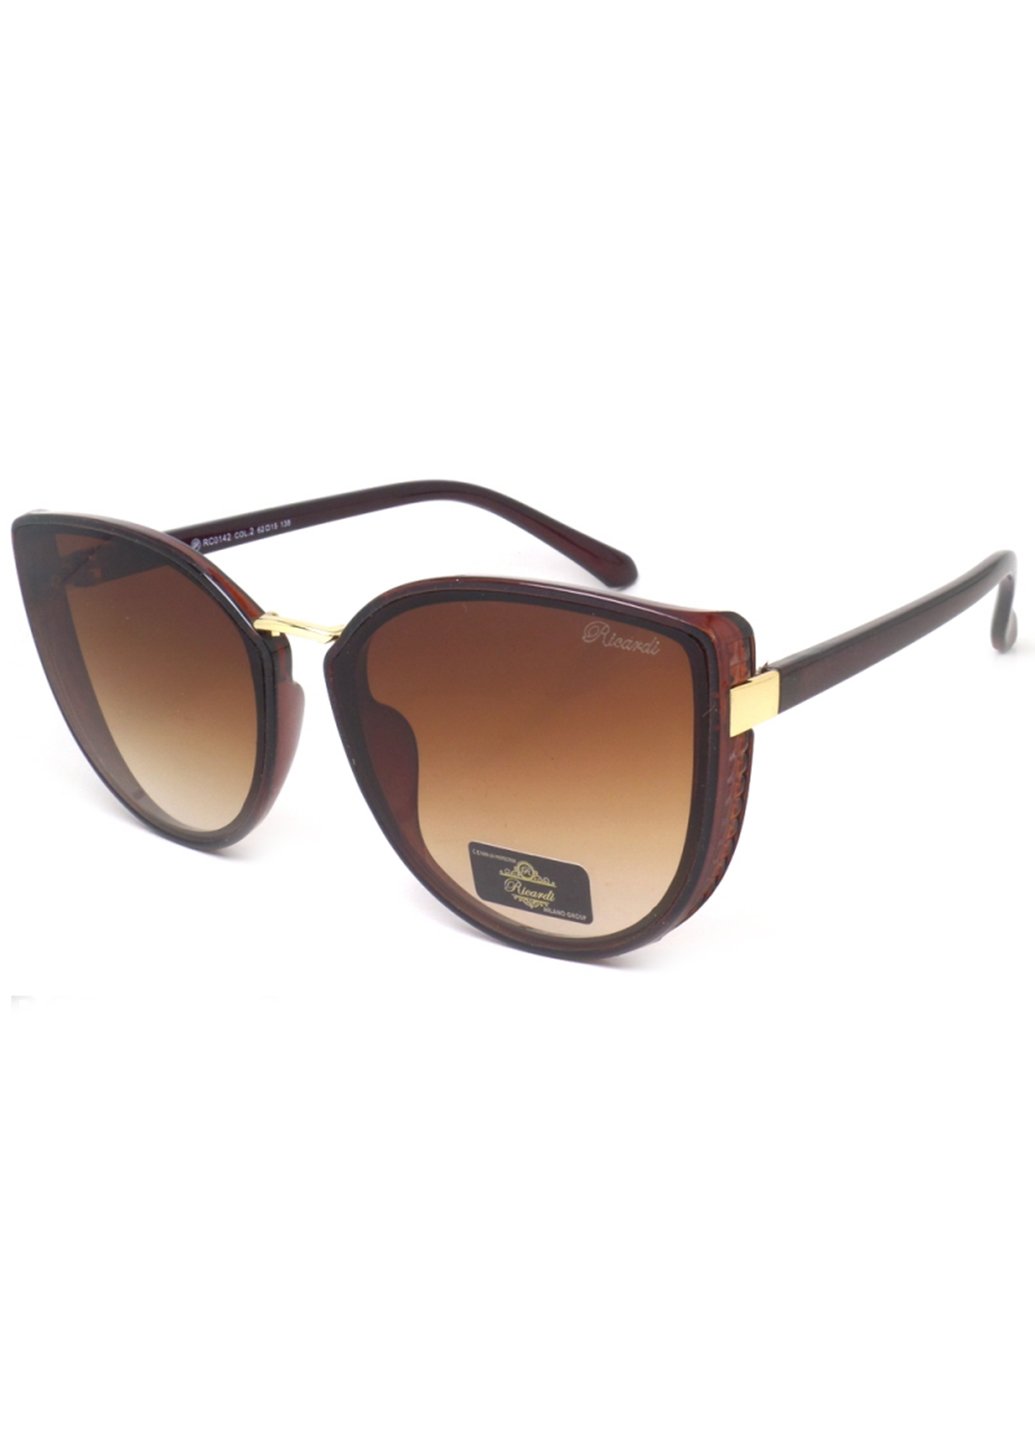 Купить Женские солнцезащитные очки Ricardi RC0142 110009 - Коричневый в интернет-магазине